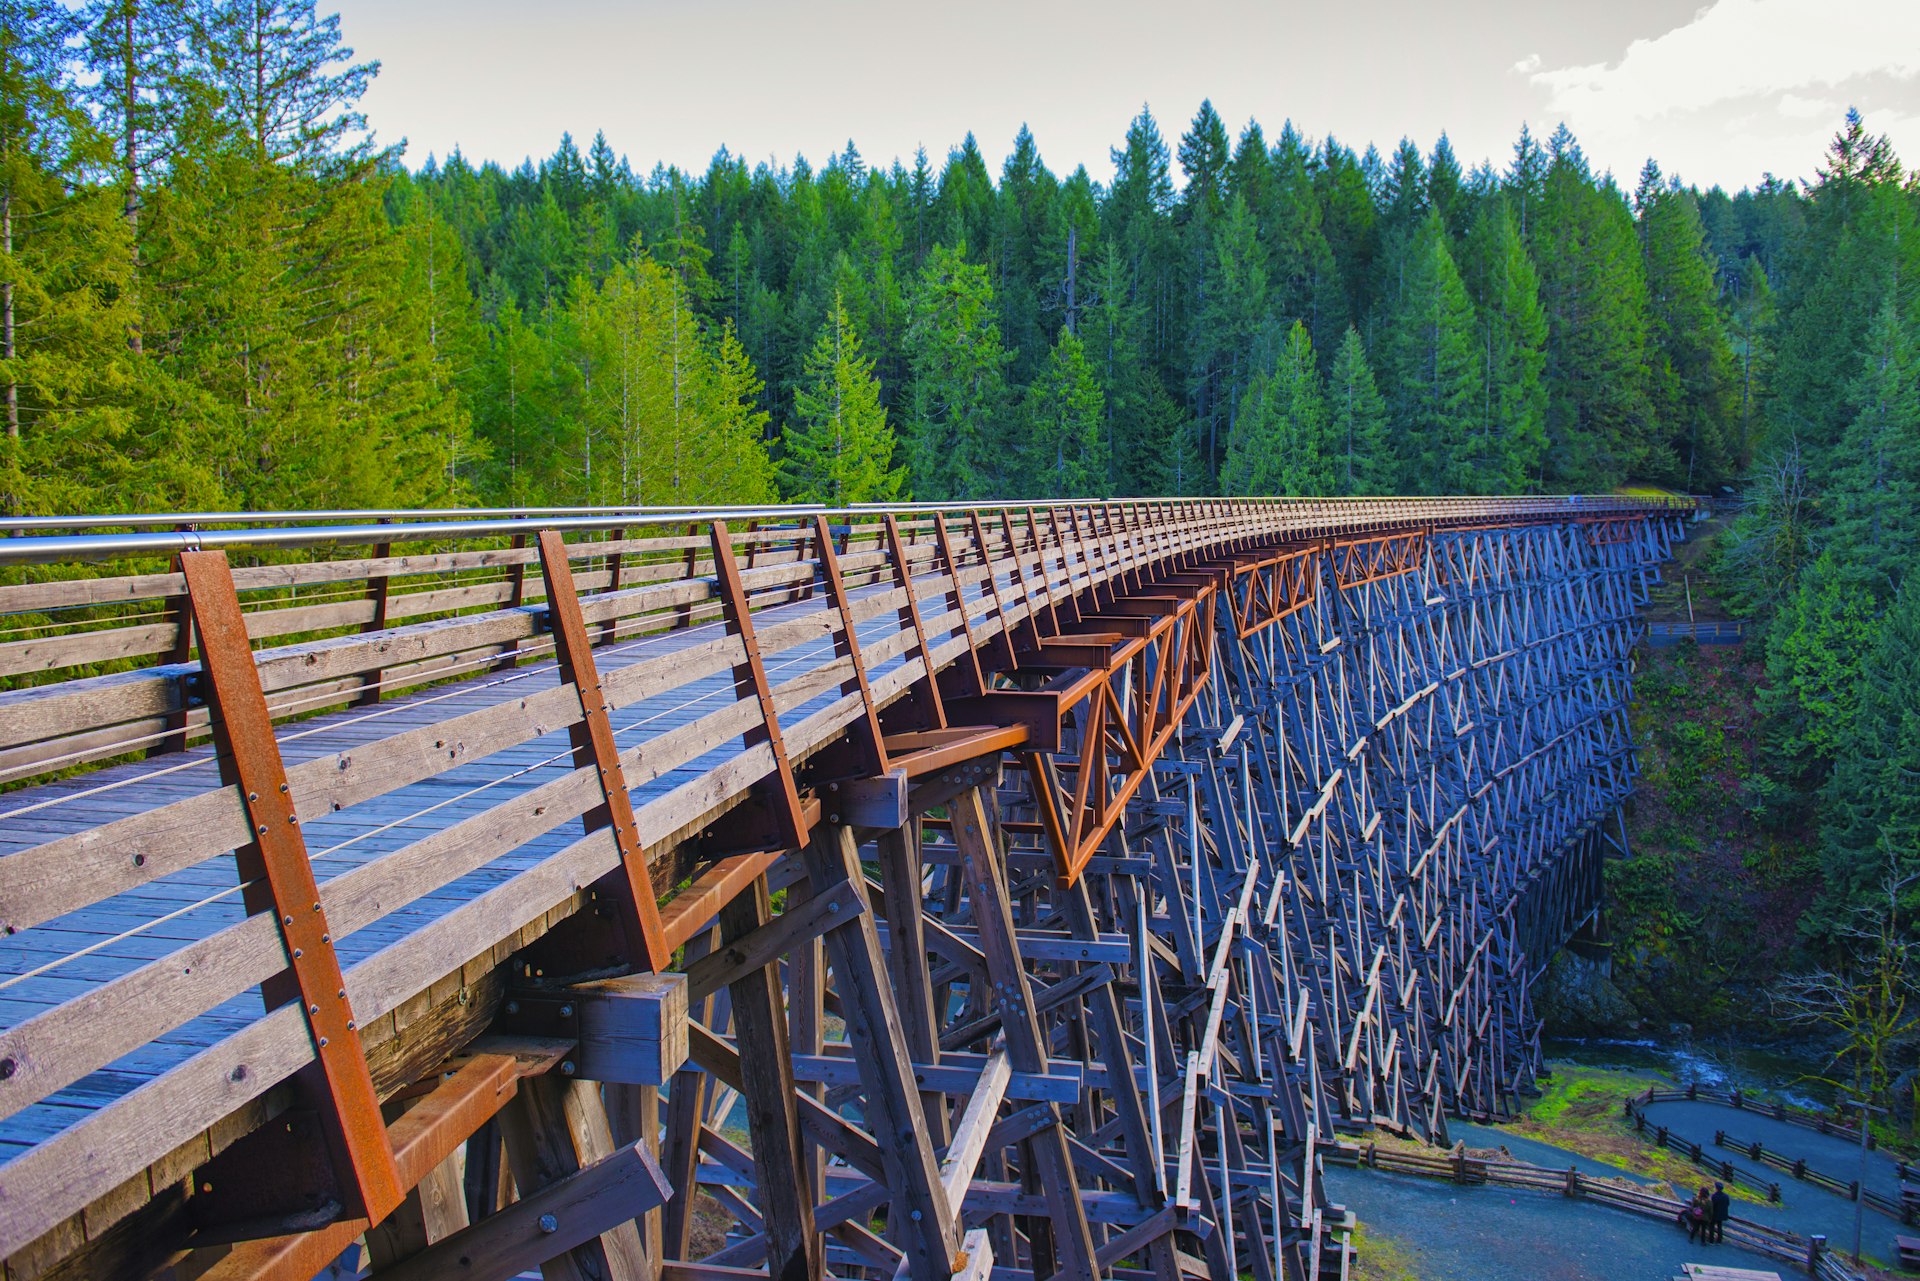 Kinsol Trestle railroad bridge in Vancouver Island, BC Canada.